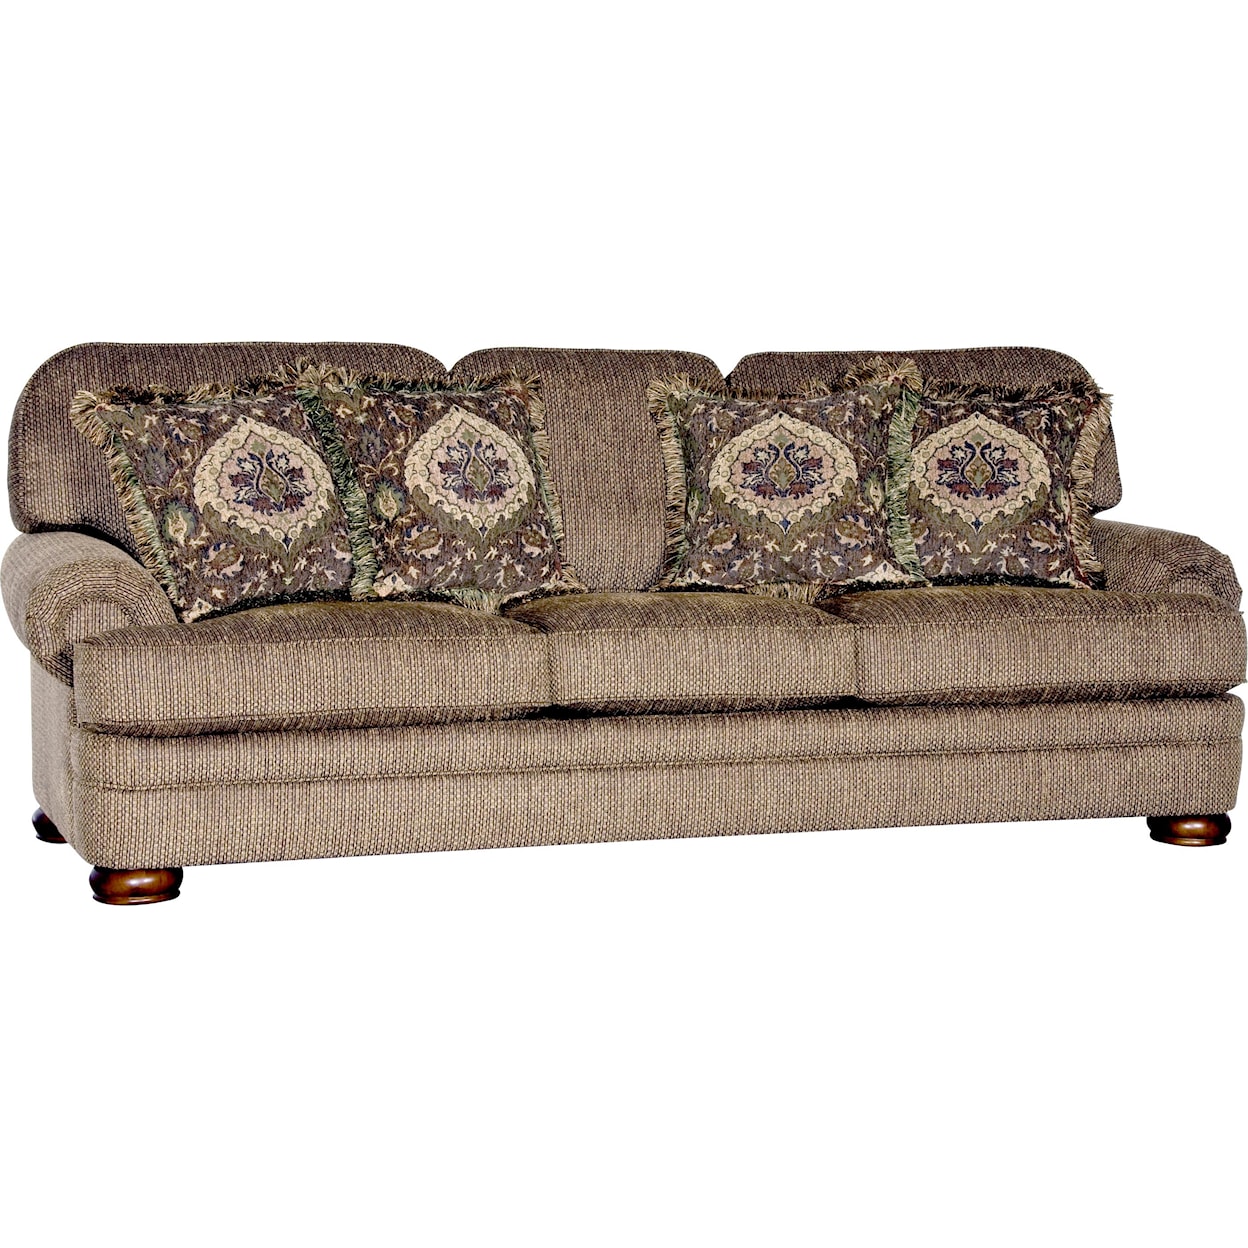 Mayo 3620 Traditional Sofa